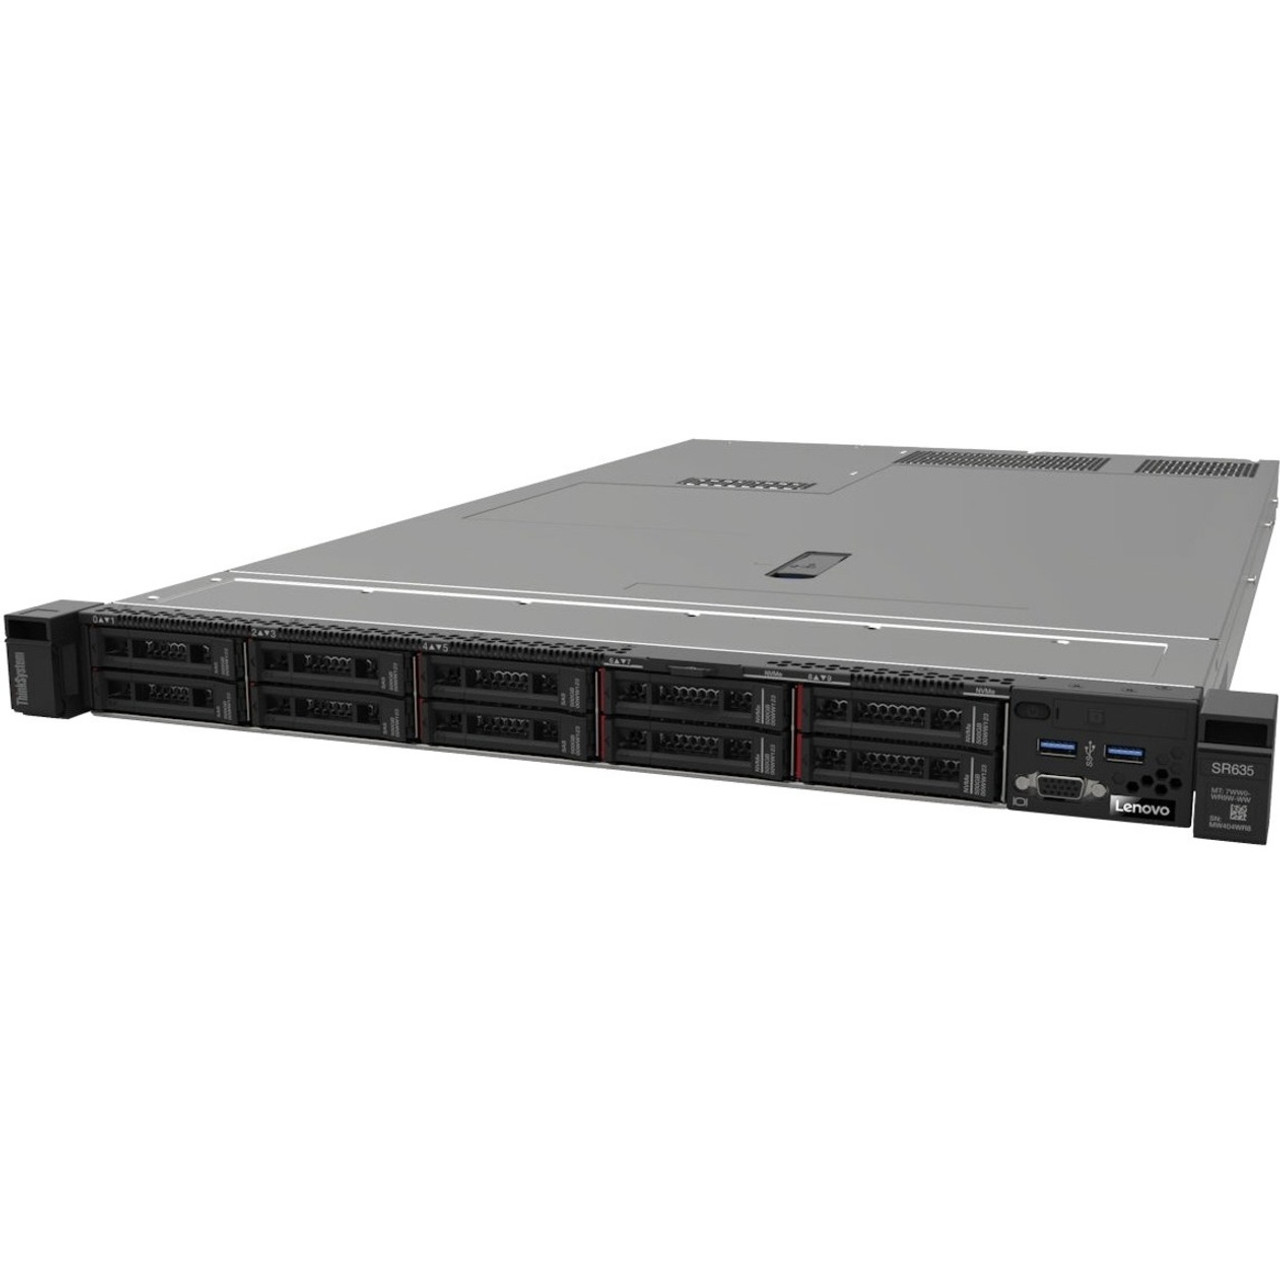 Lenovo ThinkSystem SR635 7Y99A018NA 1U Rack Server - 1 x AMD EPYC 7702P 2 GHz - 32 GB RAM - Serial ATA Controller - 7Y99A018NA